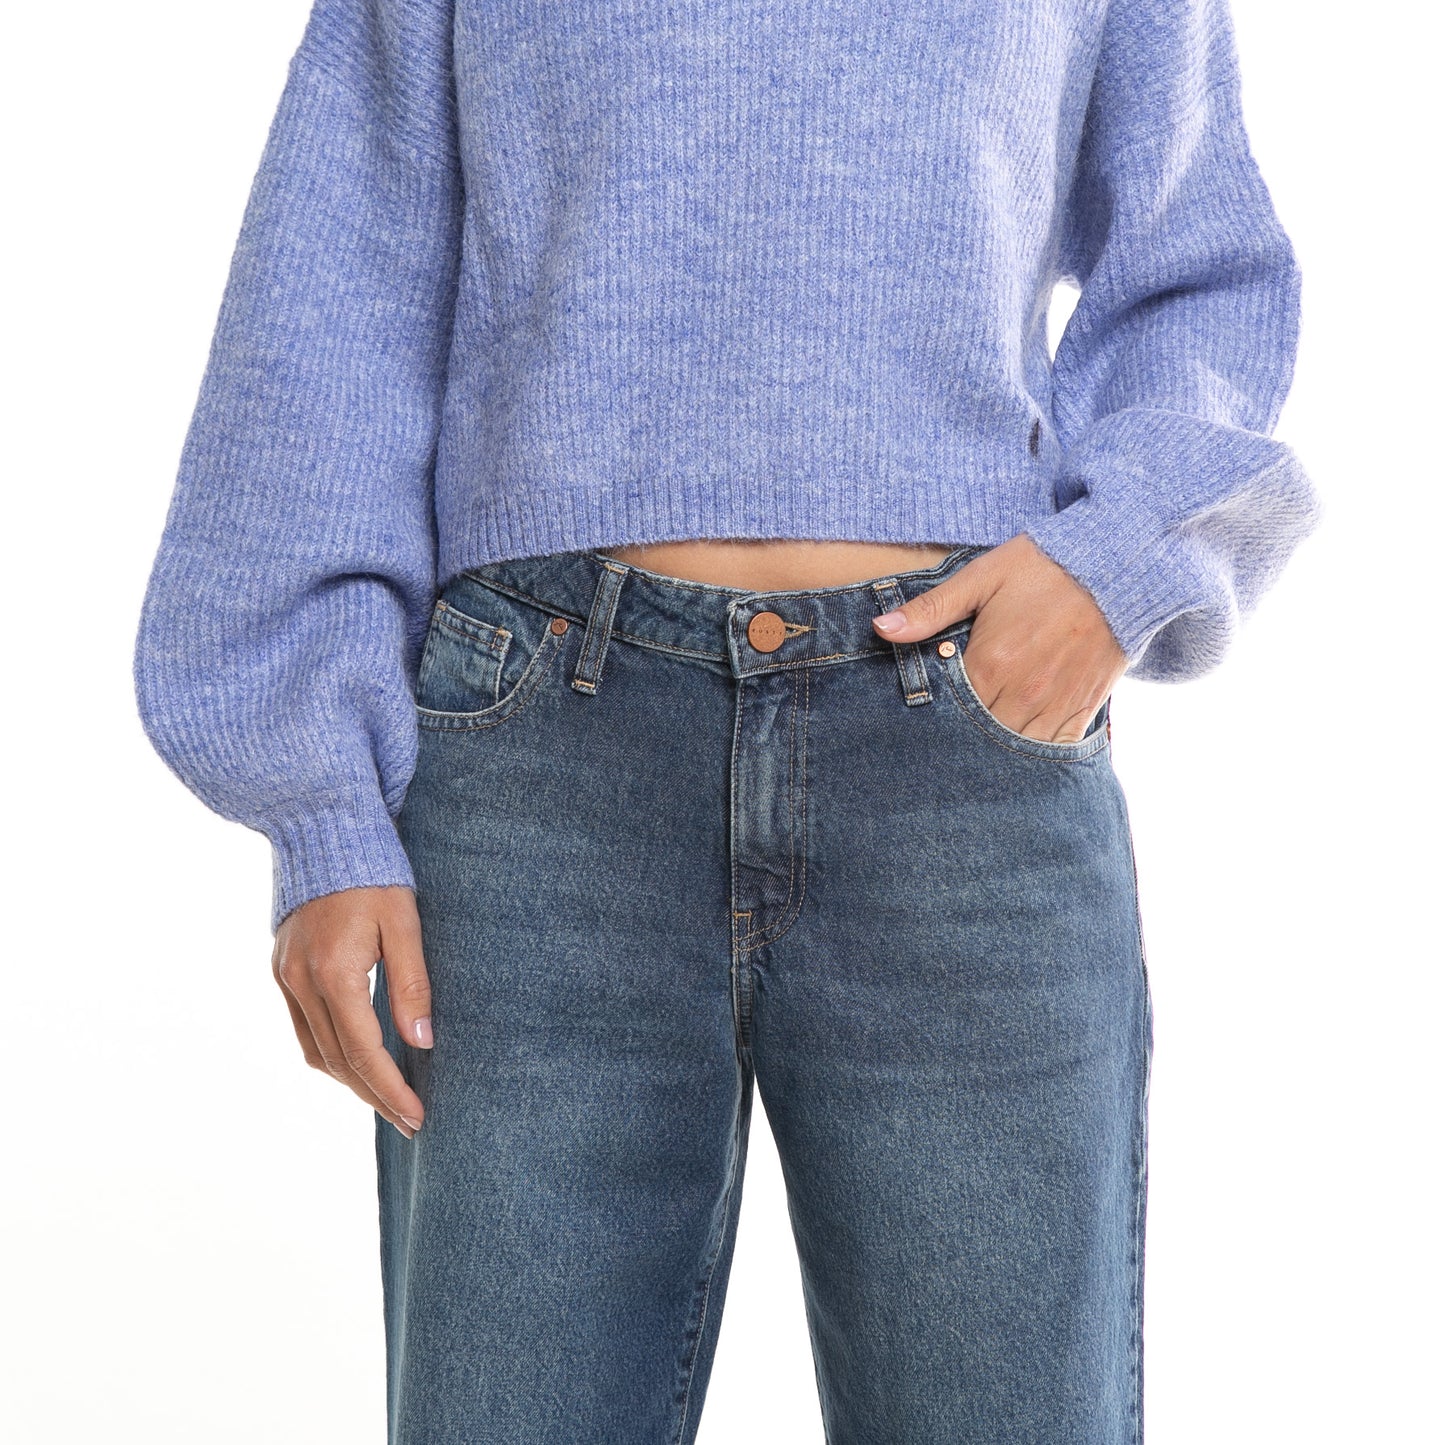 Sweater Sundae Long Sleeve Neck* Periwinkle Blue